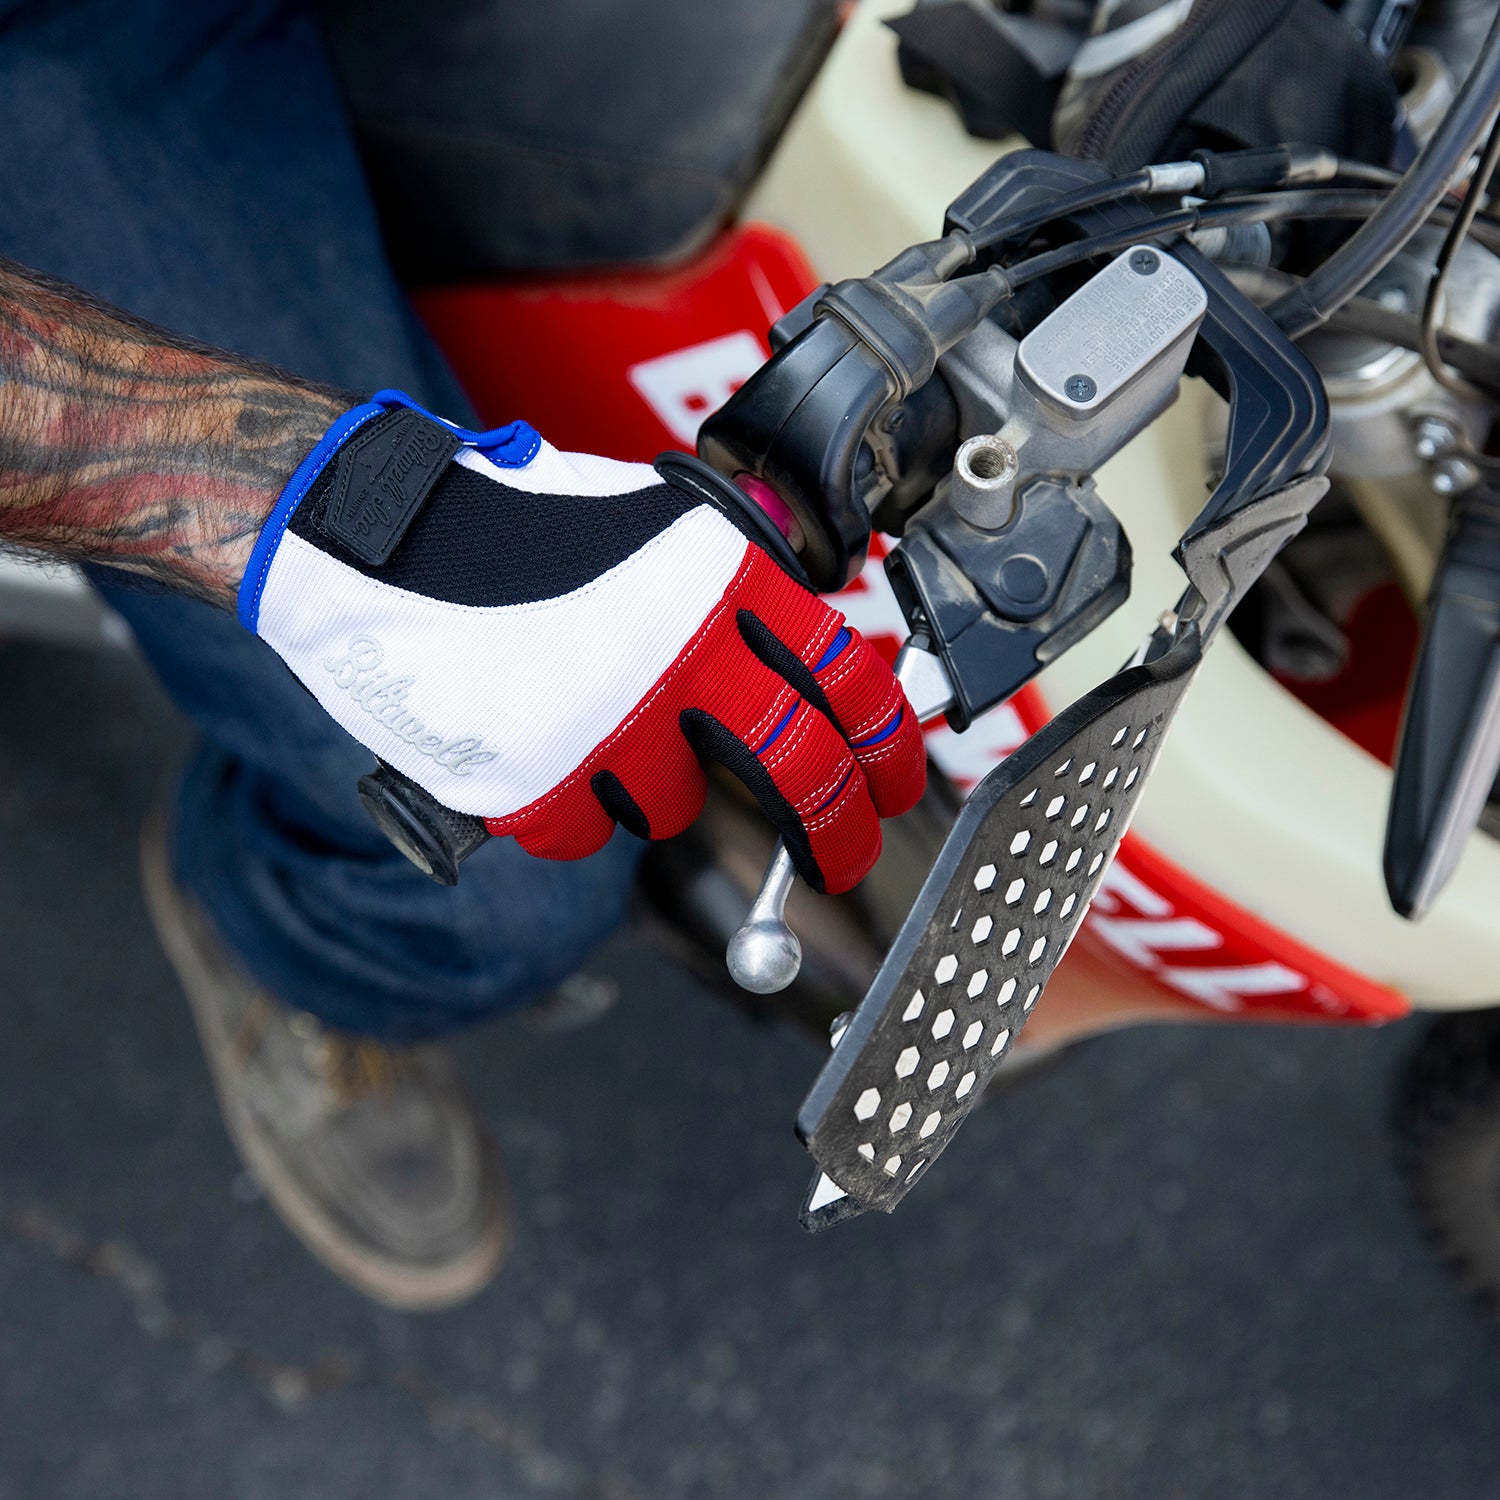 Moto Gloves - Red/White/Blue